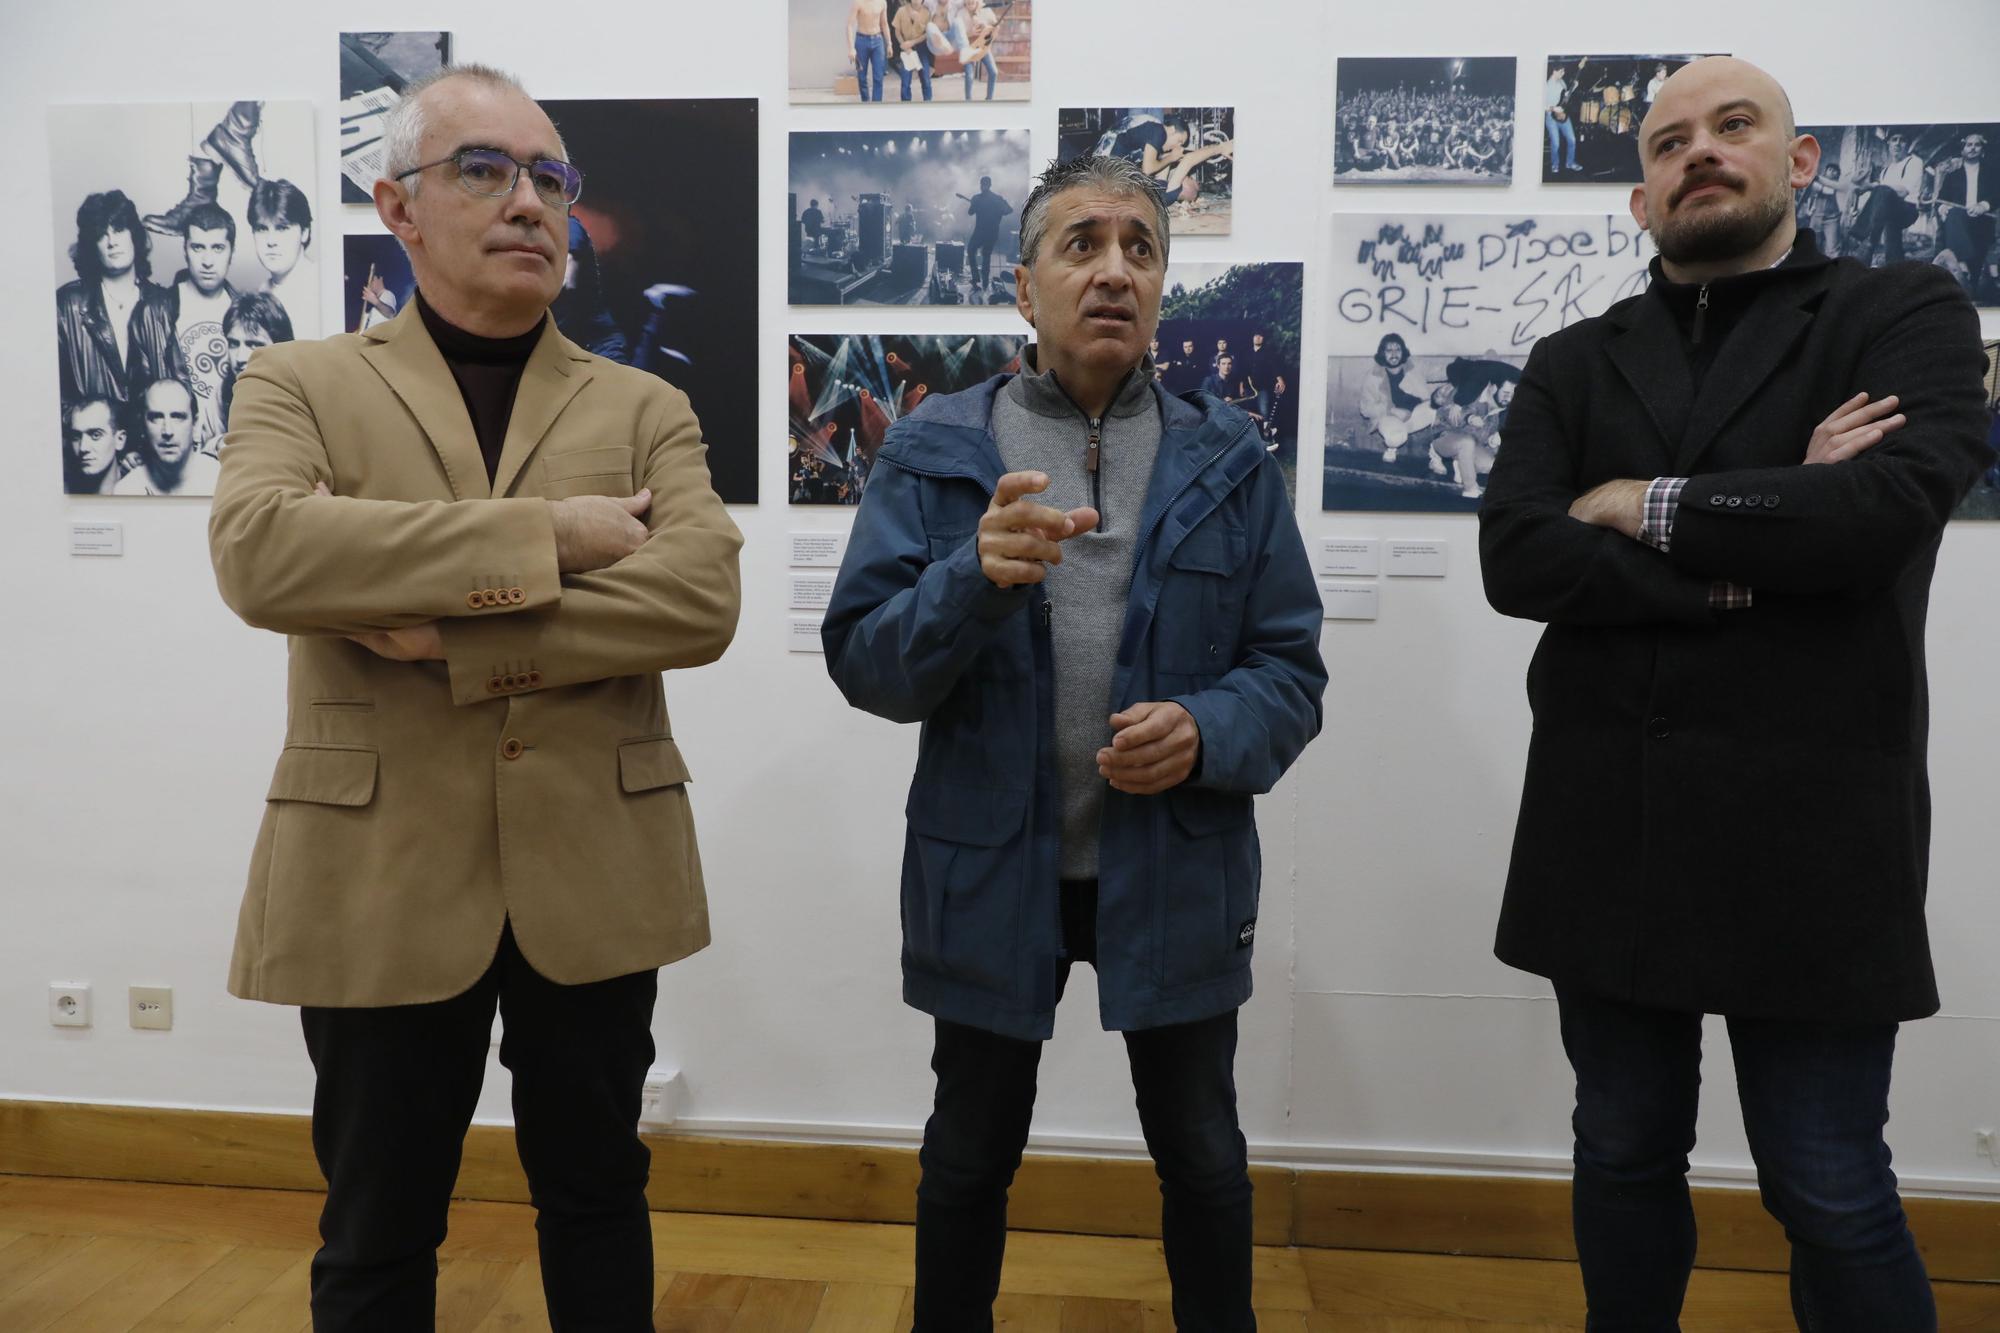 Exposición sobre "Dixebra" en el Antiguo Instituto de Gijón